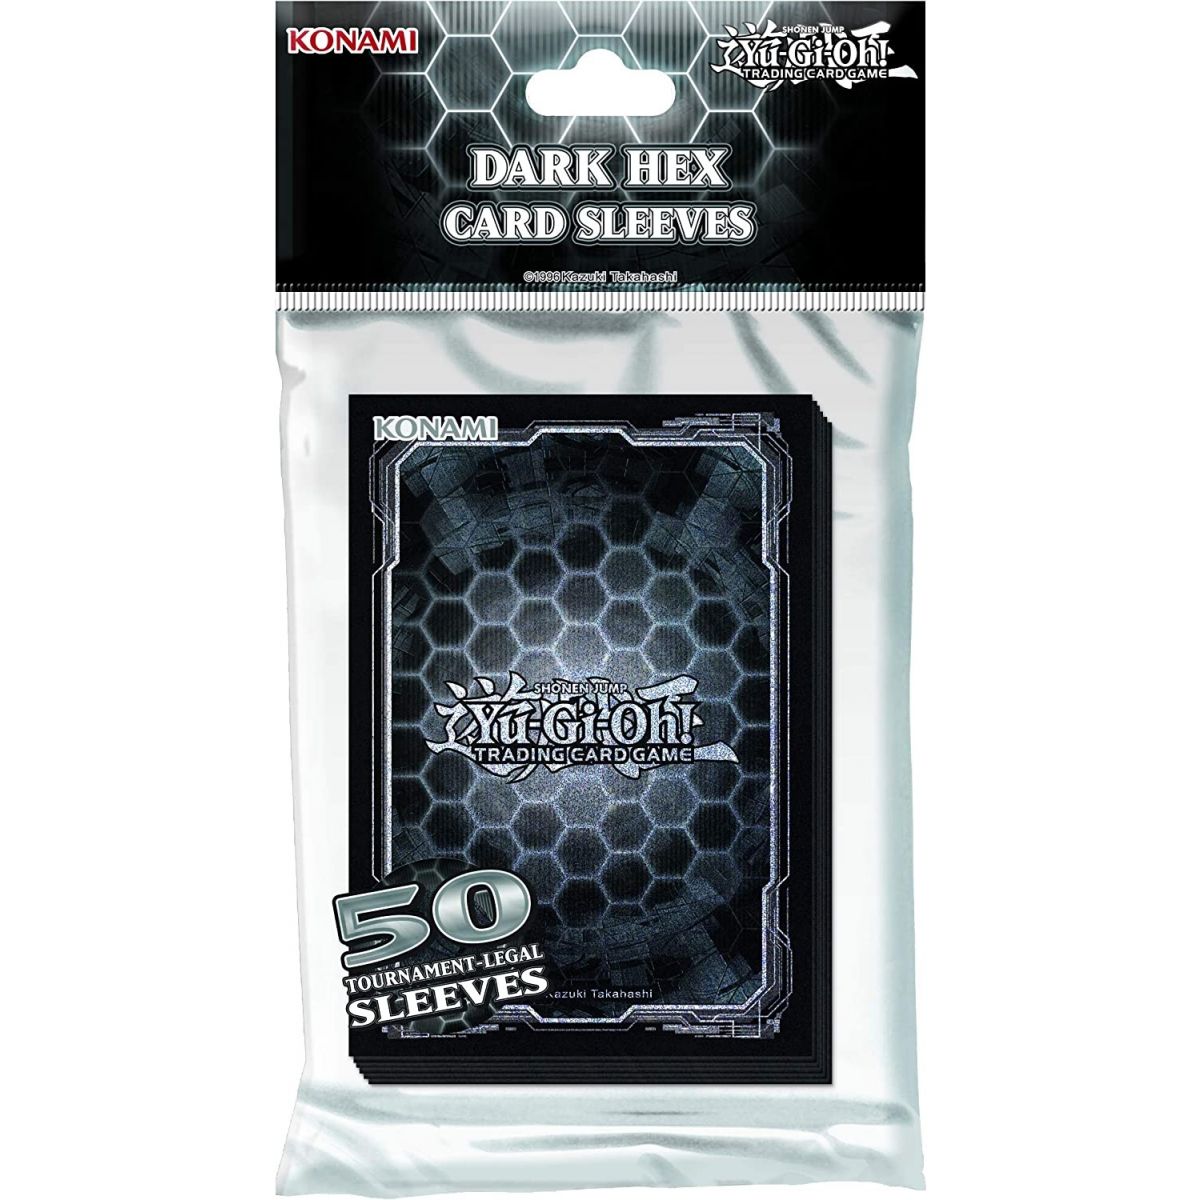 Item Yu Gi Oh! Card Sleeves - Dark Hex